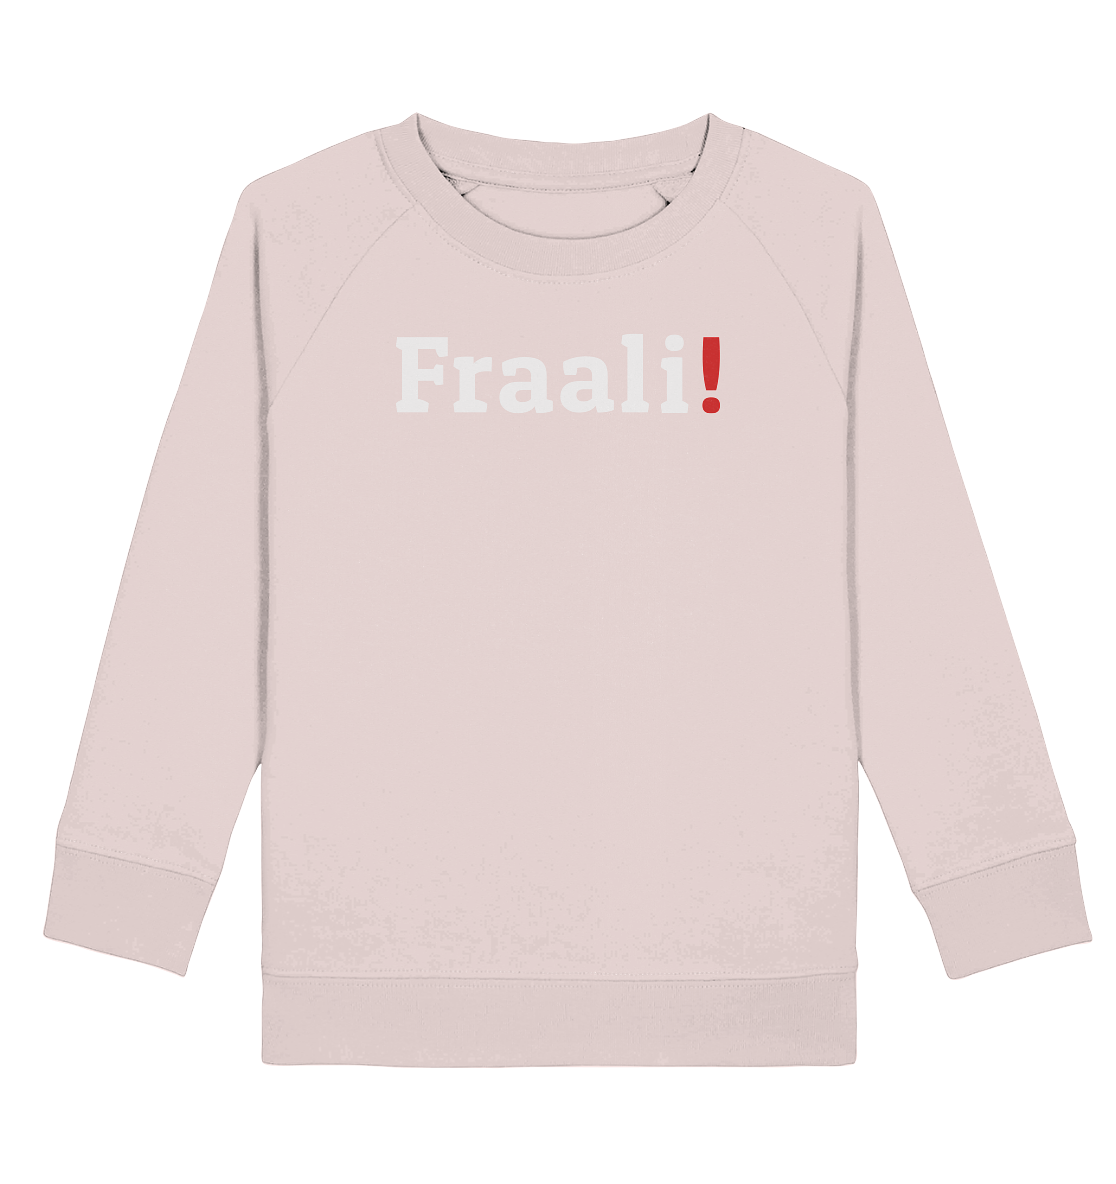 #FRAALI! - Kids Organic Sweatshirt